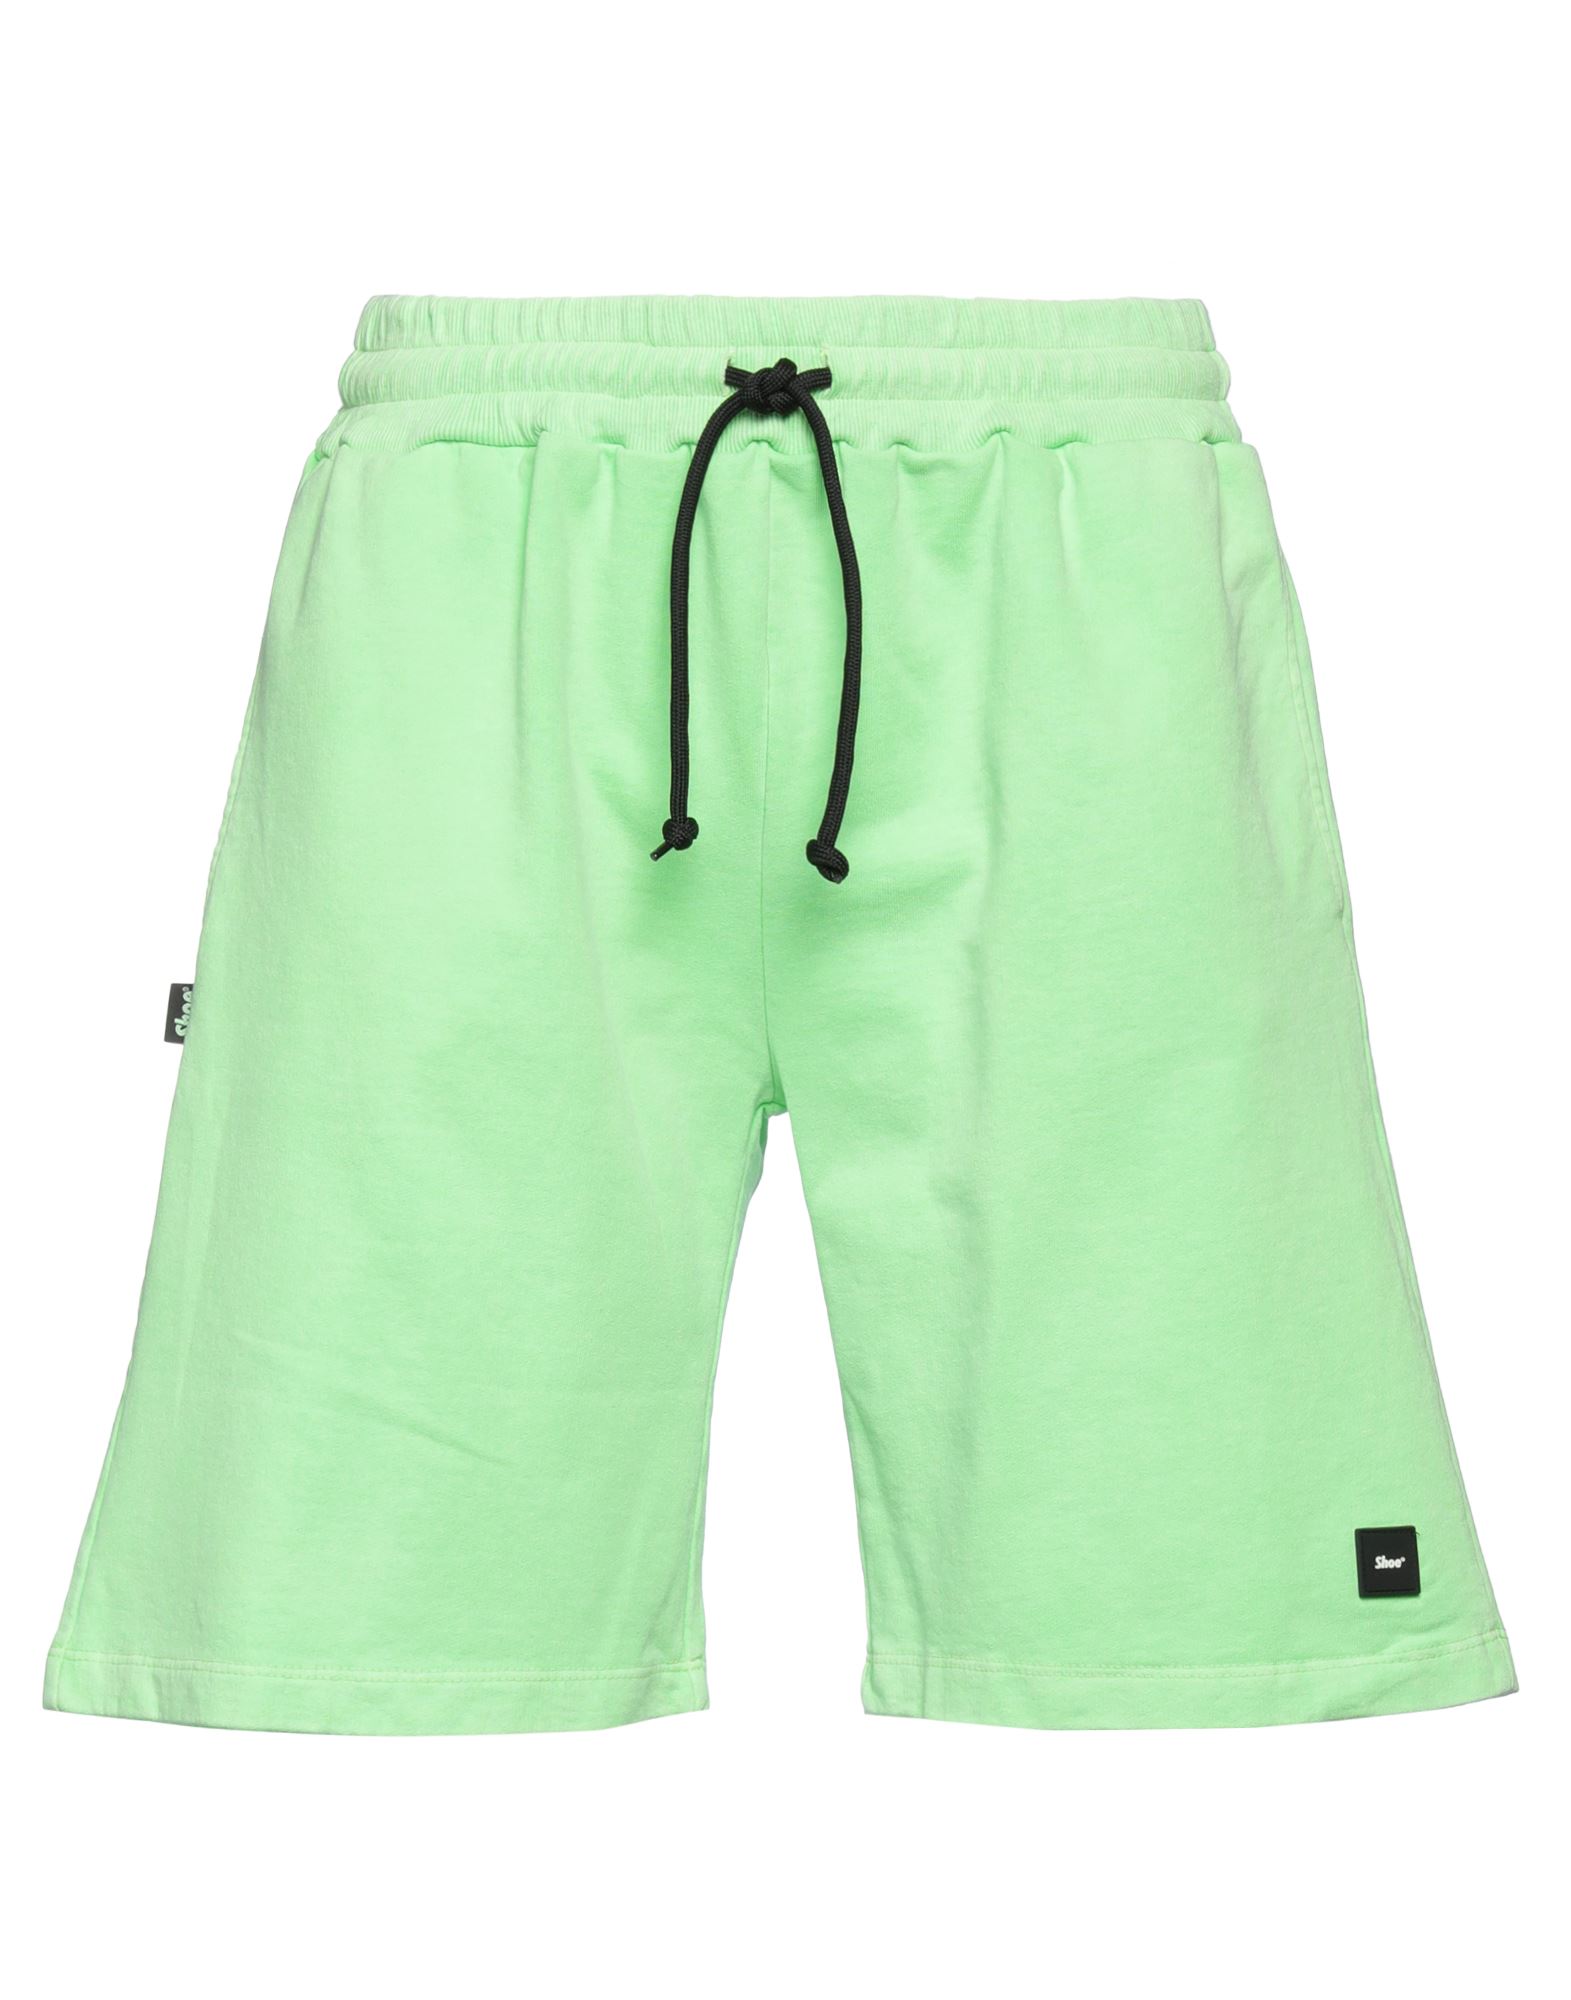 Shoe® Shoe Man Shorts & Bermuda Shorts Acid Green Size Xl Cotton